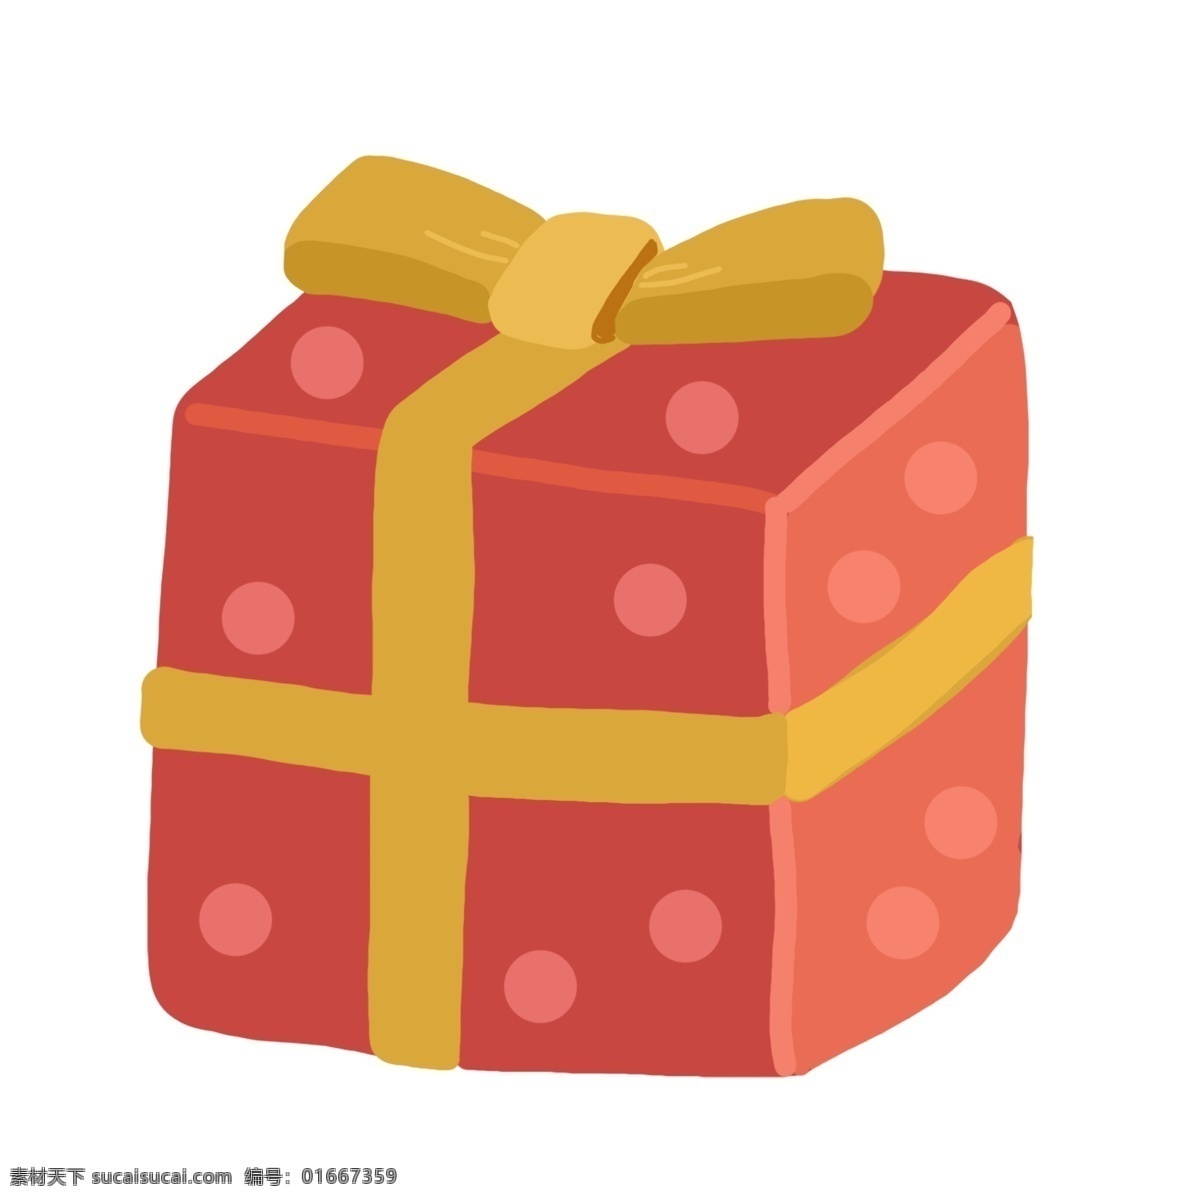 红色 游戏 礼物 插画 红色的礼物 游戏的礼品 卡通插画 游戏插画 娱乐游戏 应用游戏 智能游戏